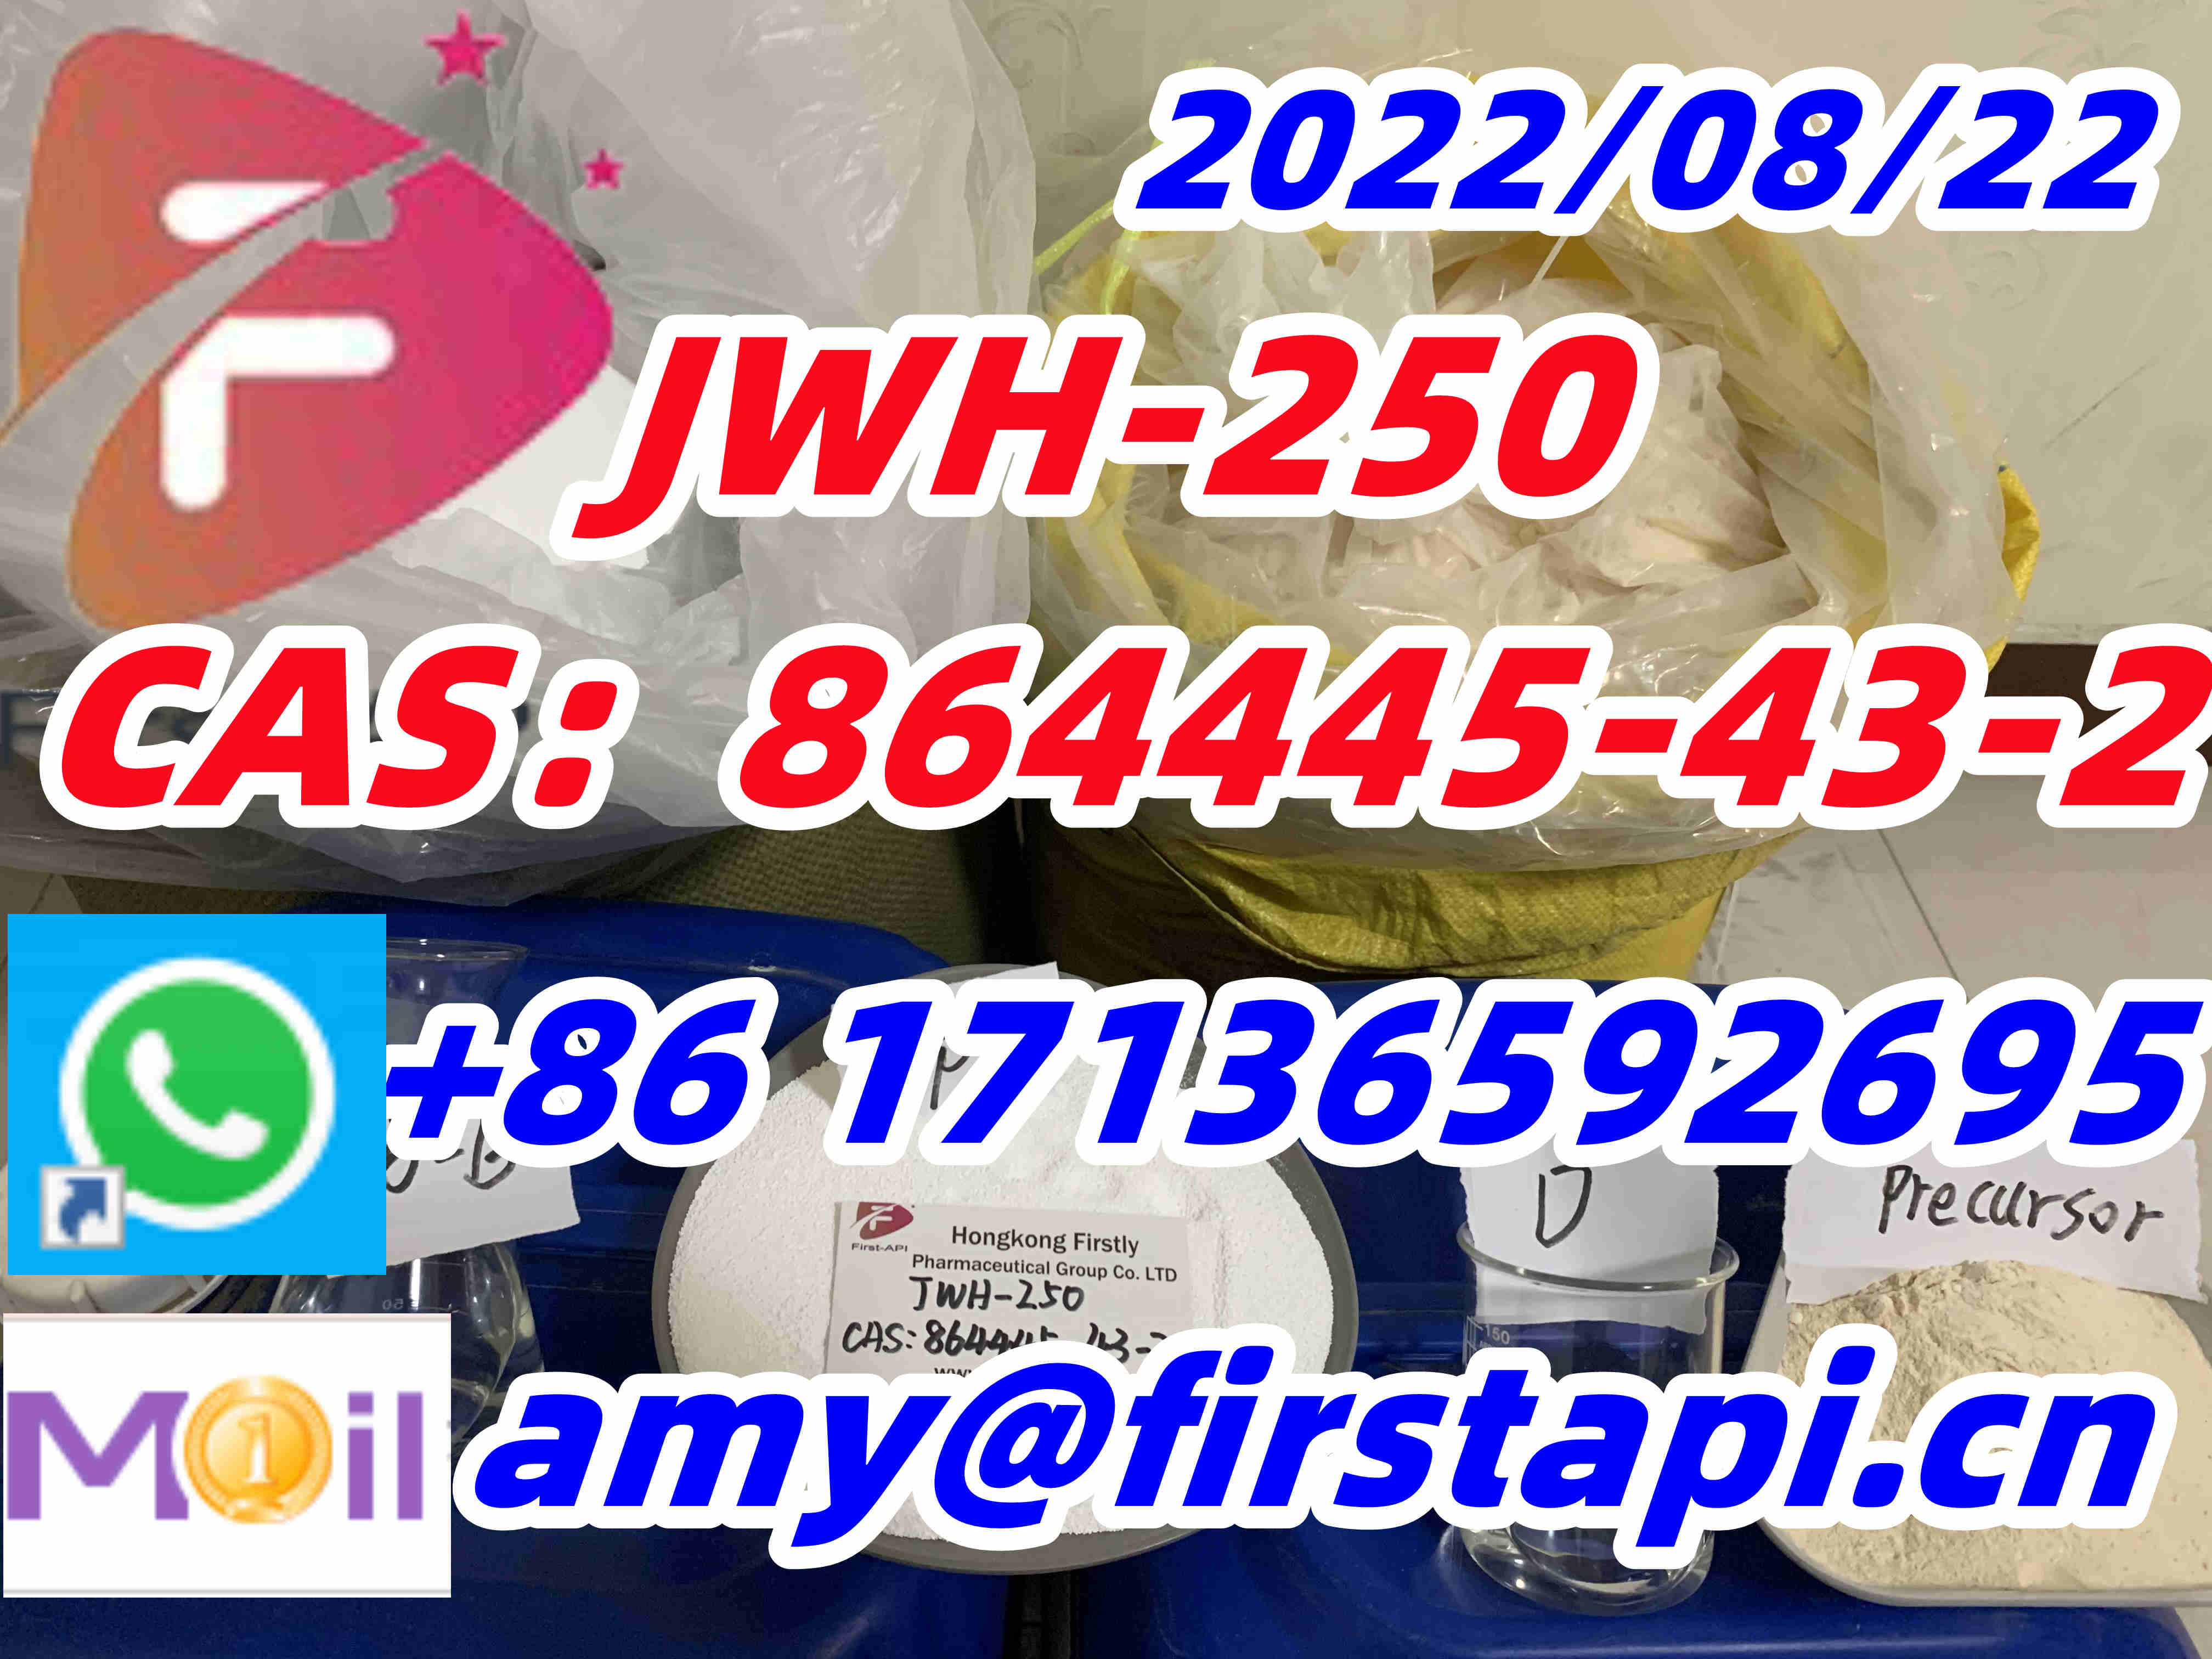 High quality,low price,CAS:864445-43-2,JWH-250,ADB-BUTINACA，5cladb - photo